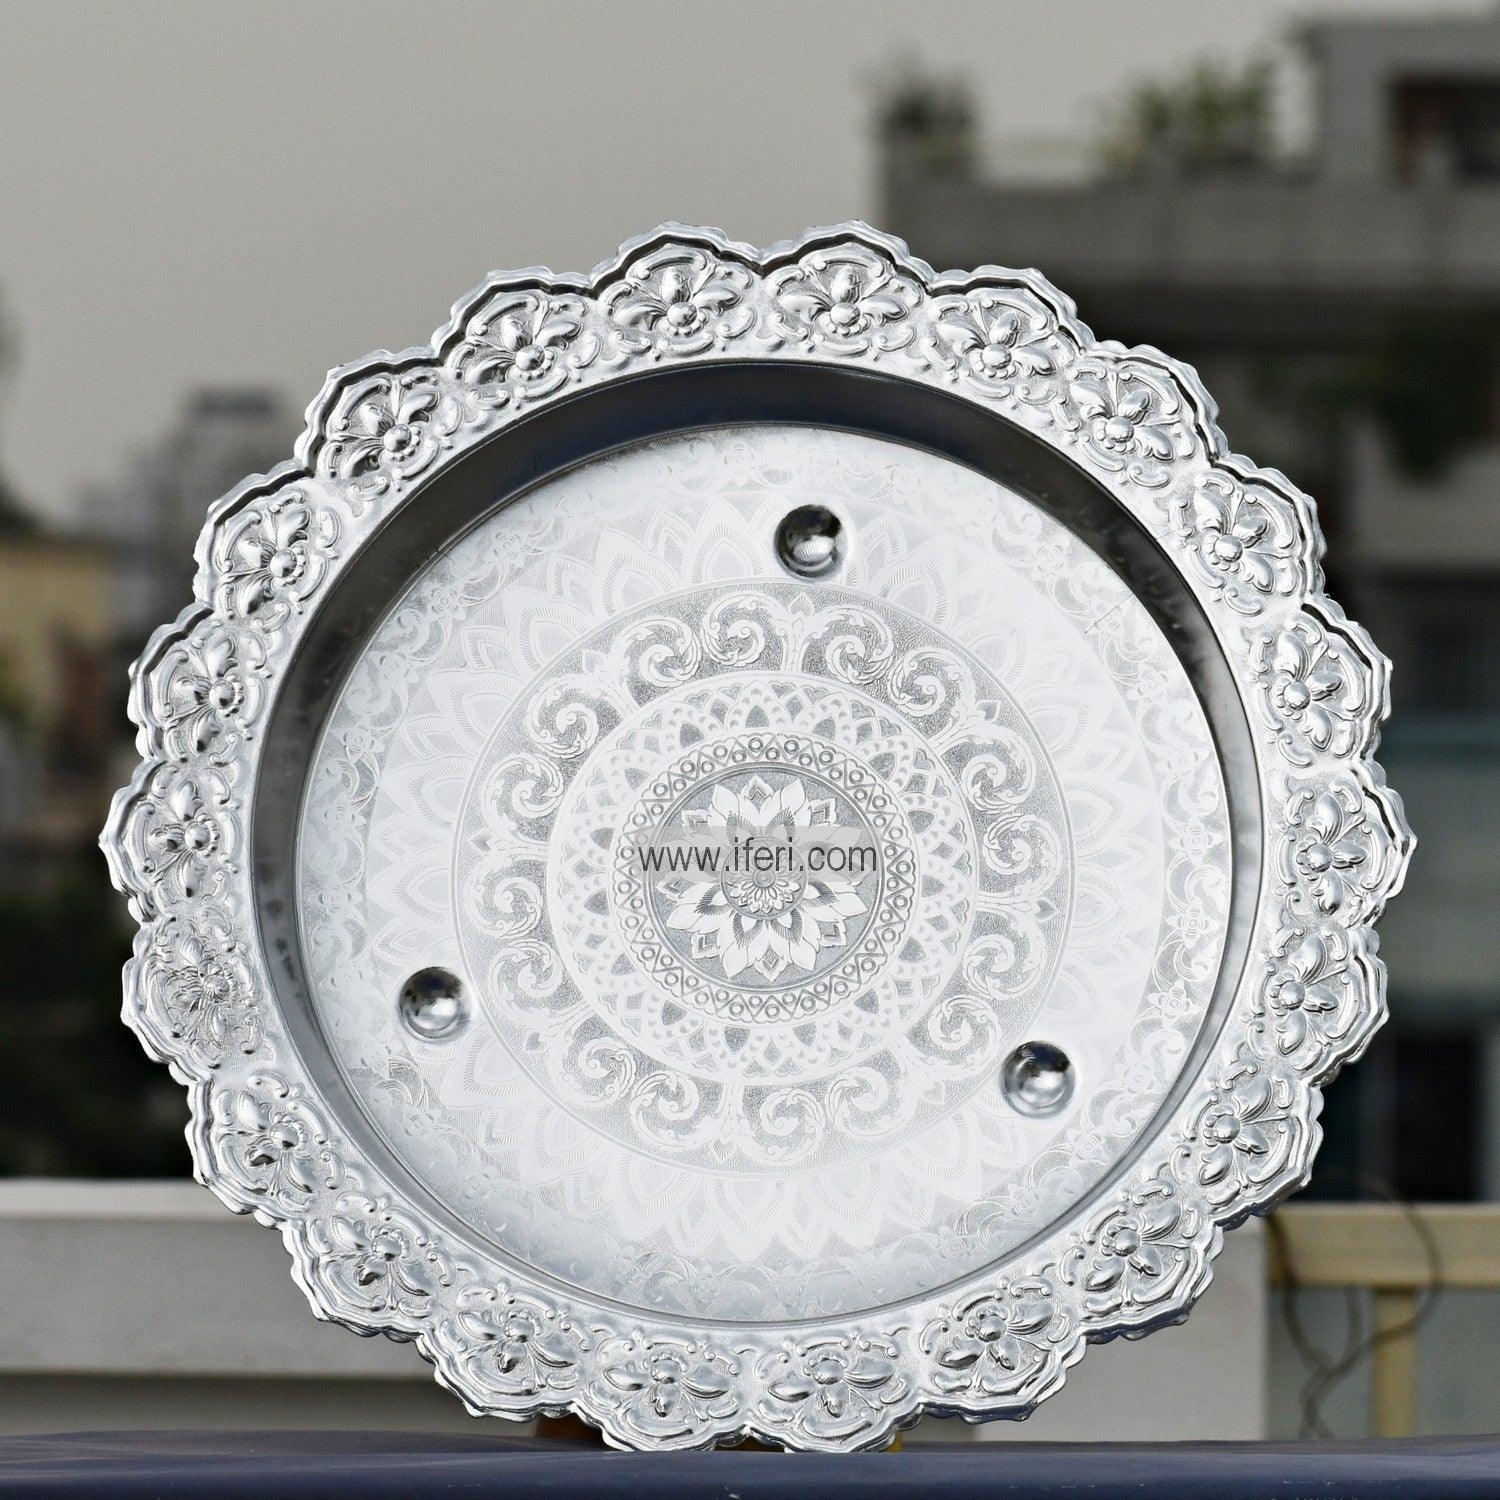 40cm Vintage Aluminium Food Plate/Thali UT1164-1 Price in Bangladesh - iferi.com